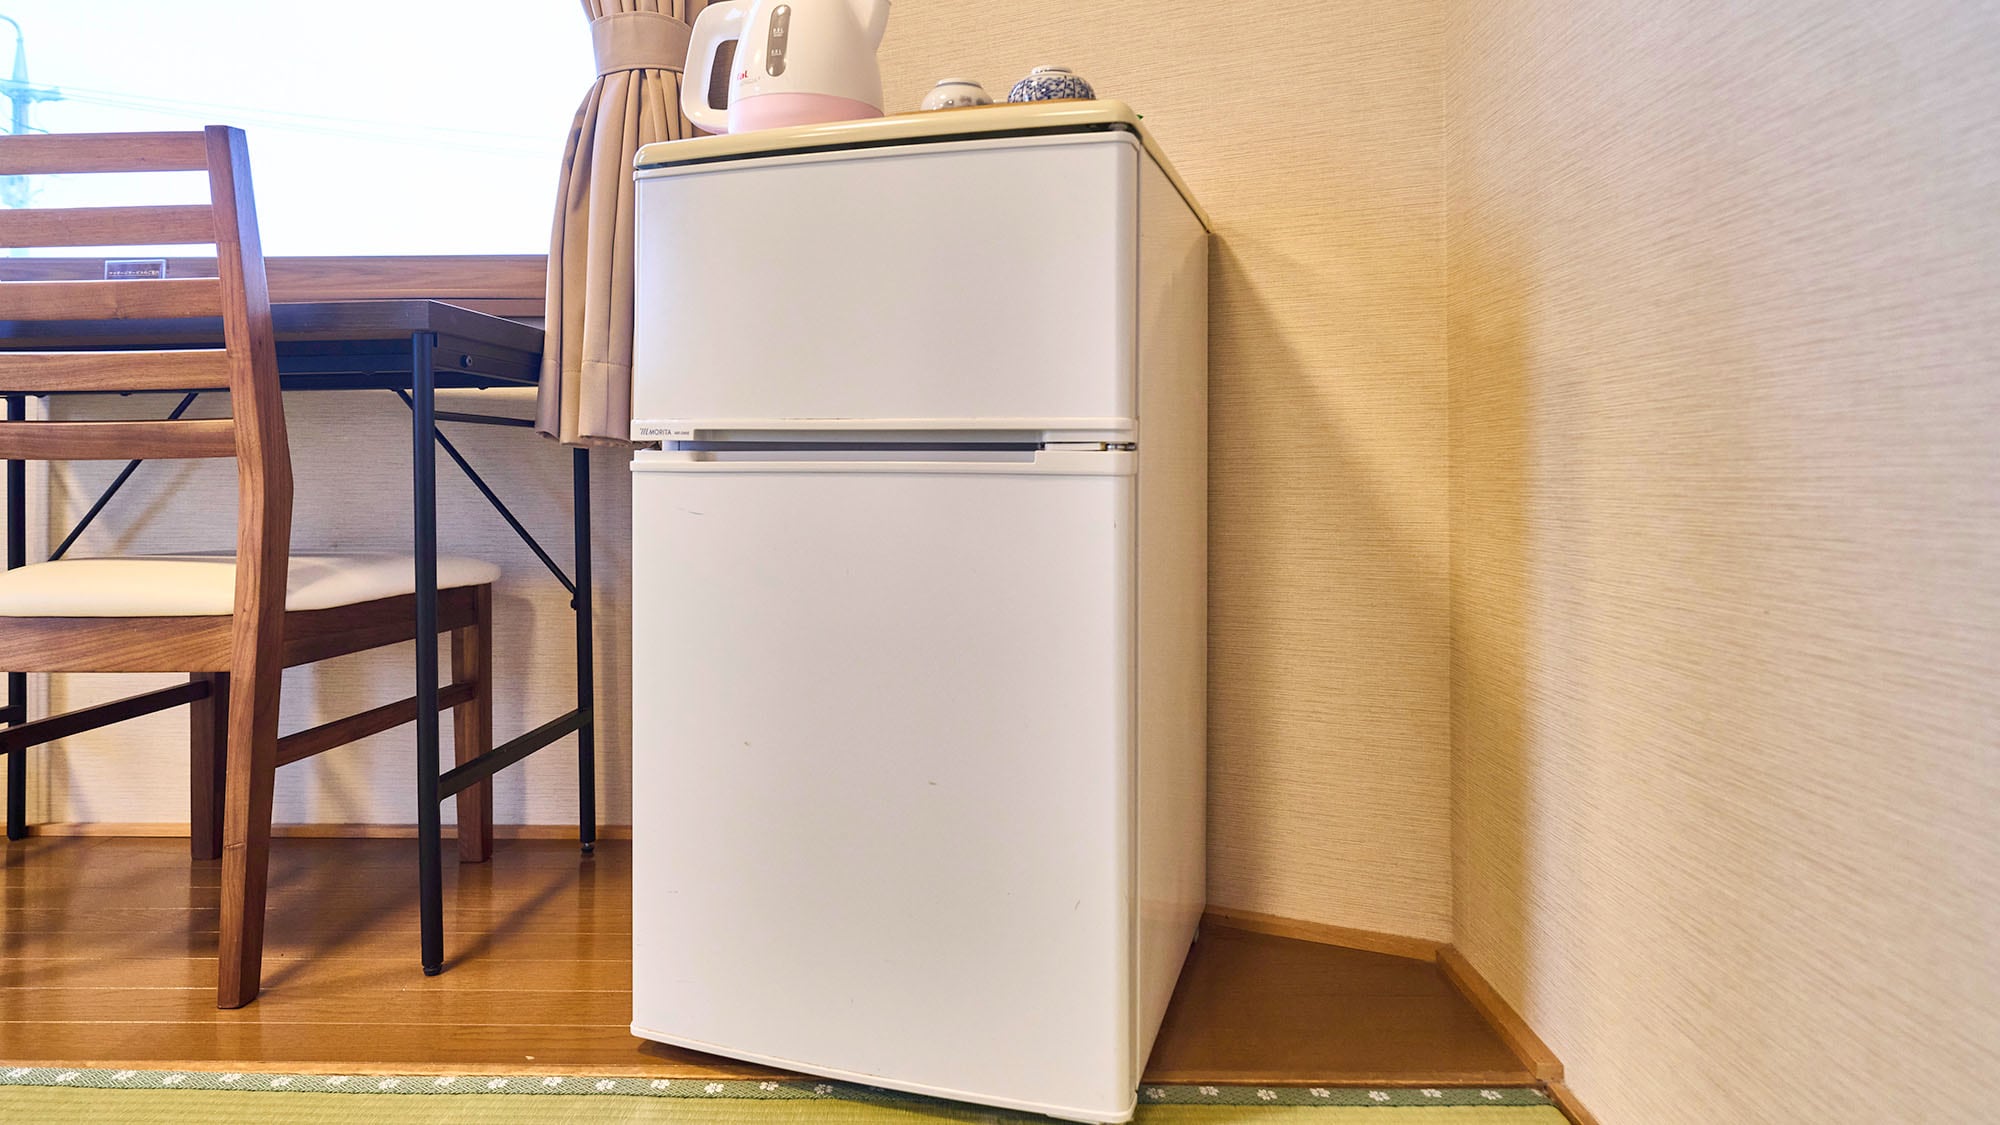 ・【일본식 A】냉장고나 공기 청정기 등 쾌적하게 보내기 위한 설비를 갖추고 있습니다